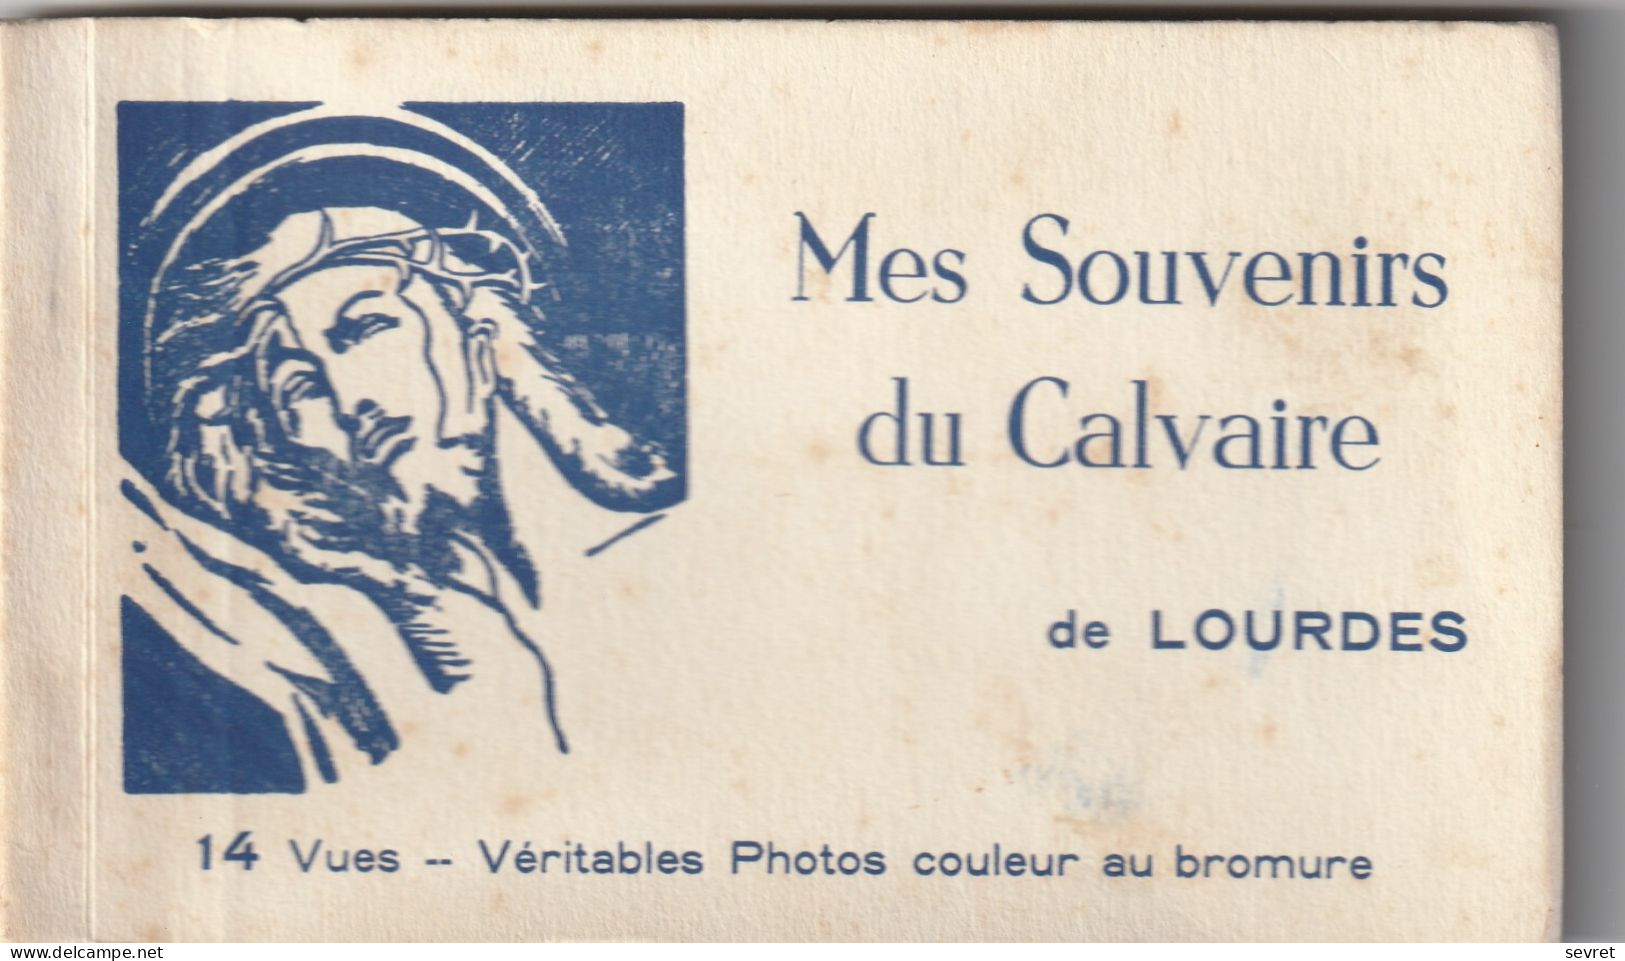 Carnet De 14 Vues 15x9 - LOURDES. Mes Souvenirs Du Calvaire. Véritables Photos Couleur Au Bromure - Holy Places